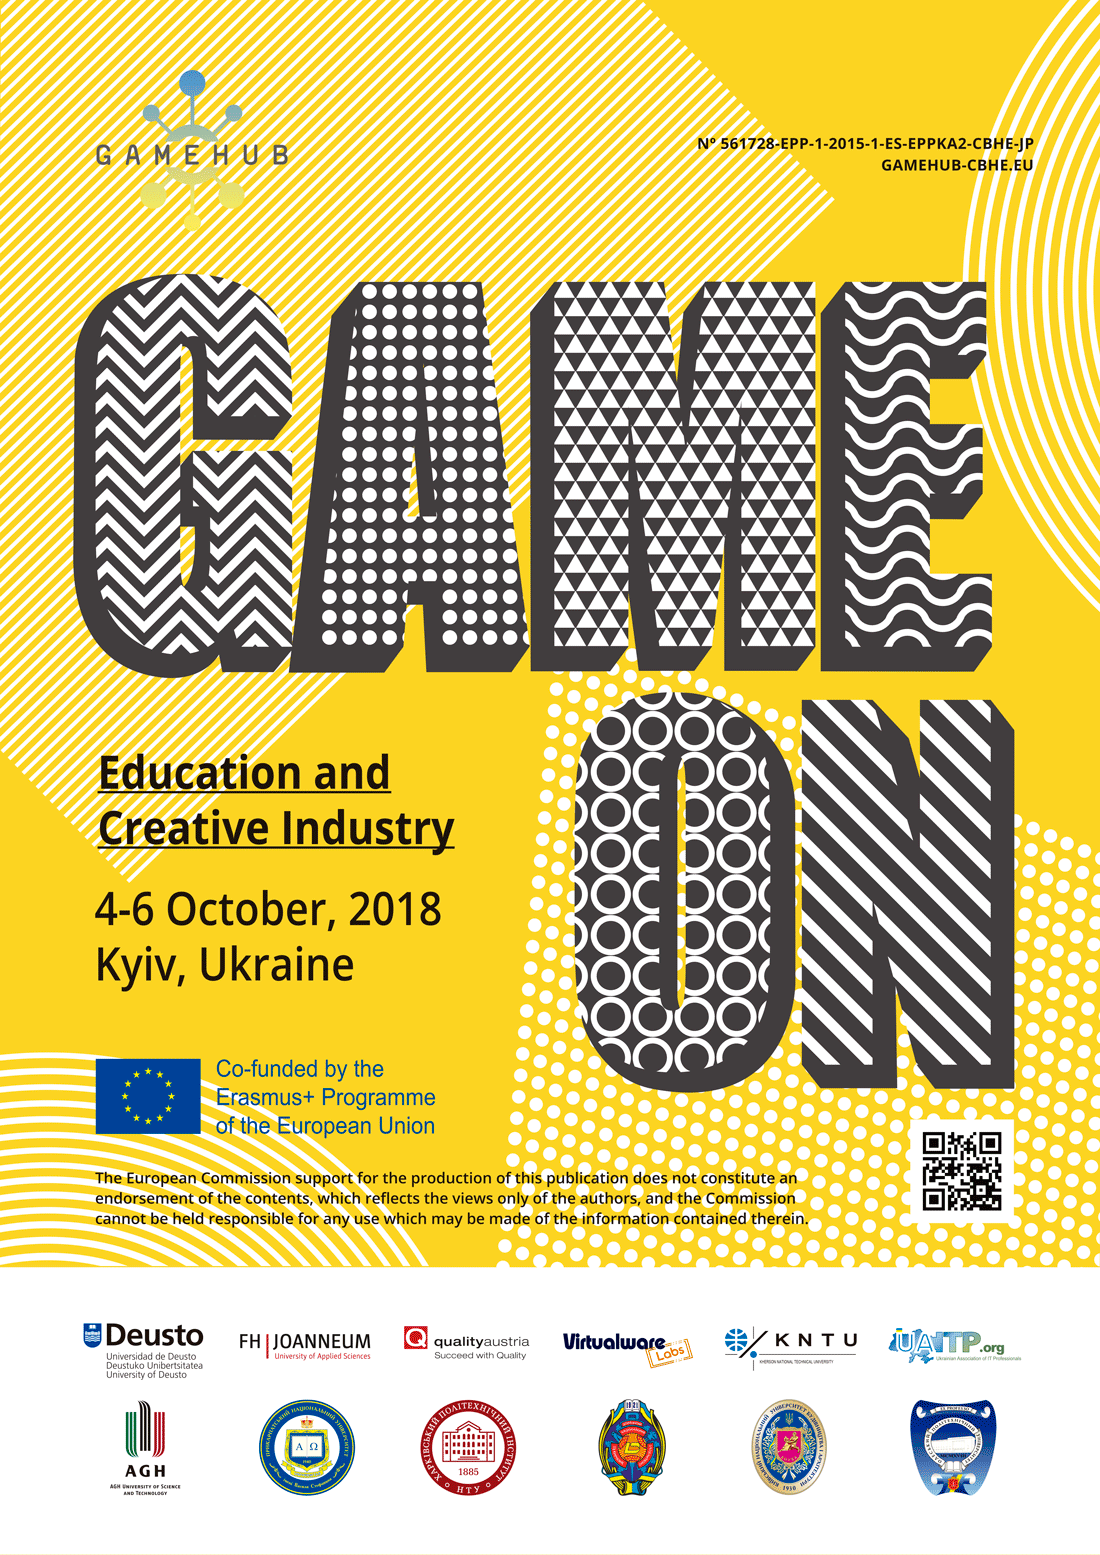 Im Vordergrund steht der Text: "GAME ON". Darunter steht: "Education and Creative Industry, 4-6 October, 2018, Kyiv, Ukraine"